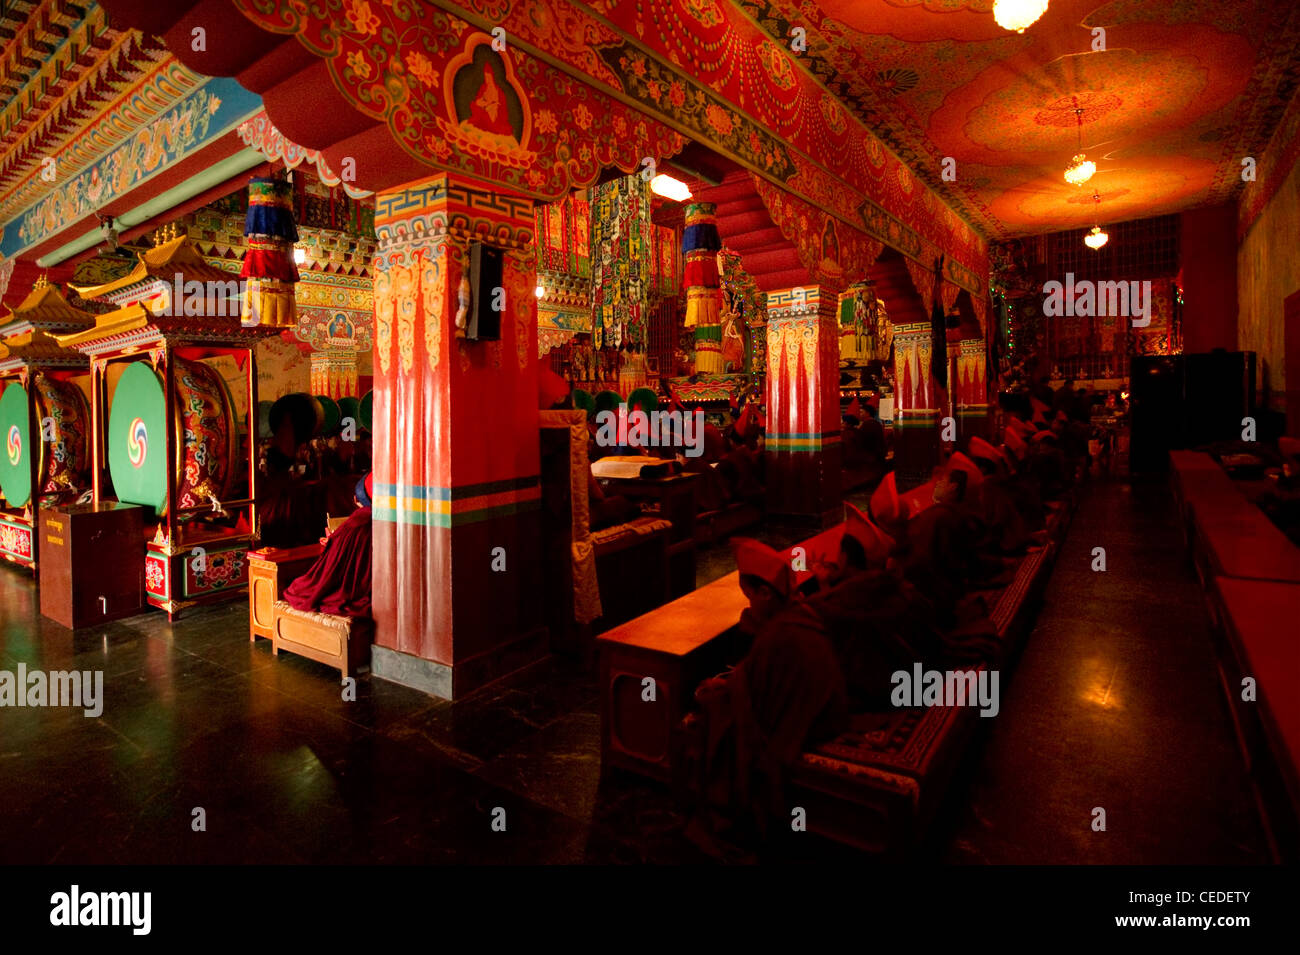 À l'intérieur d'un monastère bouddhiste au Sikkim, Inde Banque D'Images